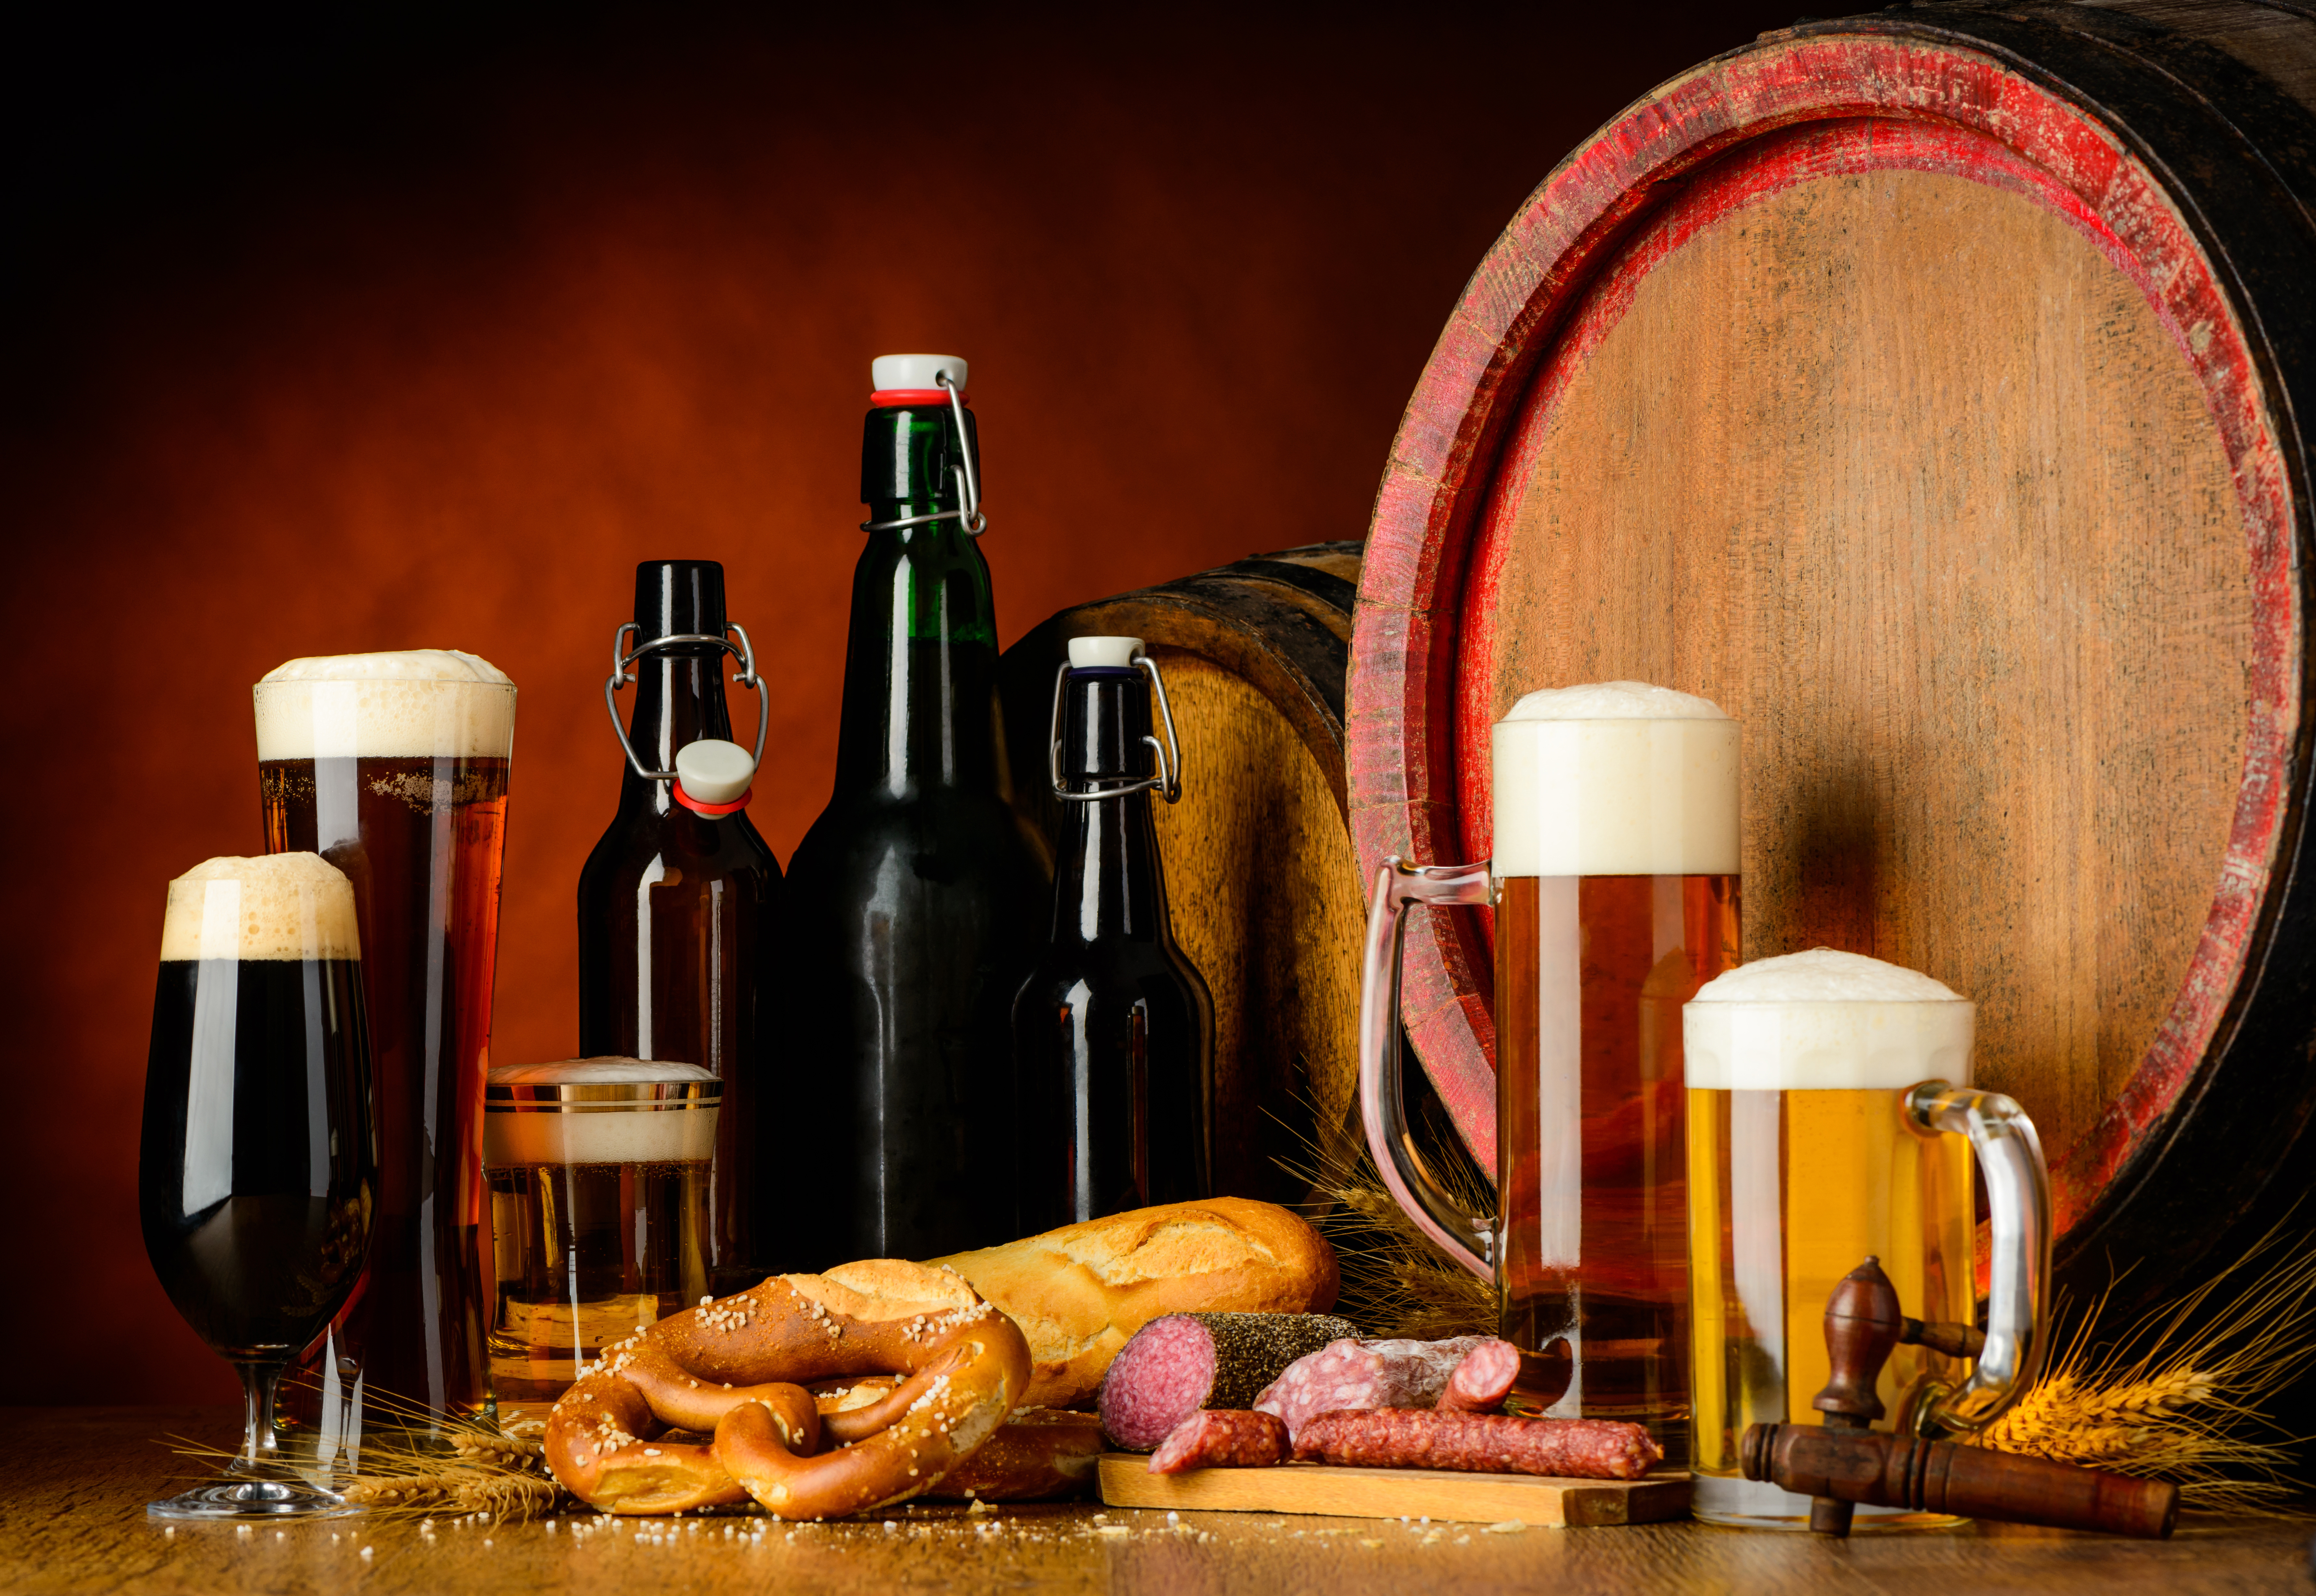 food, still life, alcohol, barrel, beer, bottle, drink, glass, meat